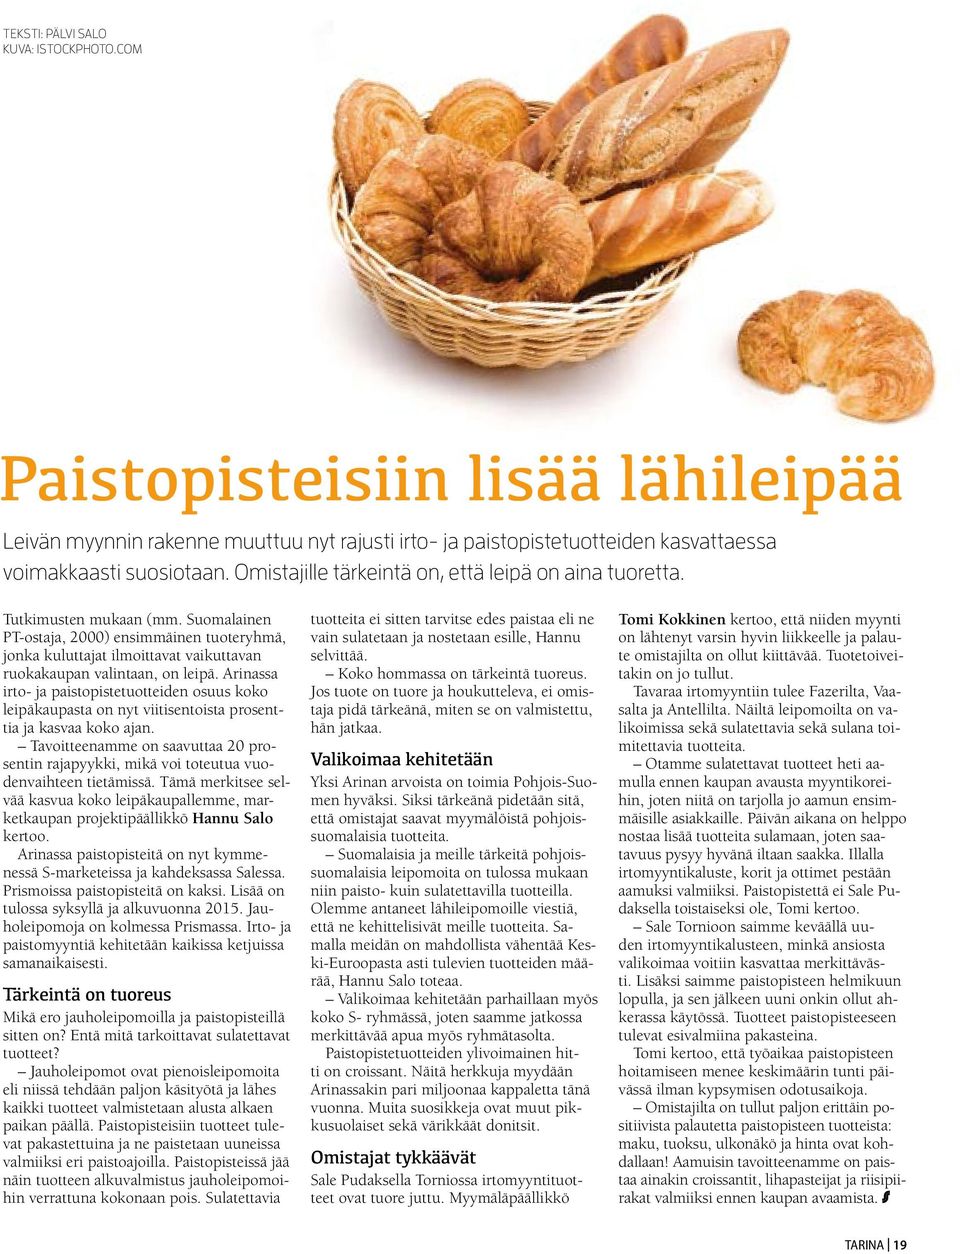 Suomalainen PT-ostaja, 2000) ensimmäinen tuoteryhmä, jonka kuluttajat ilmoittavat vaikuttavan ruokakaupan valintaan, on leipä.